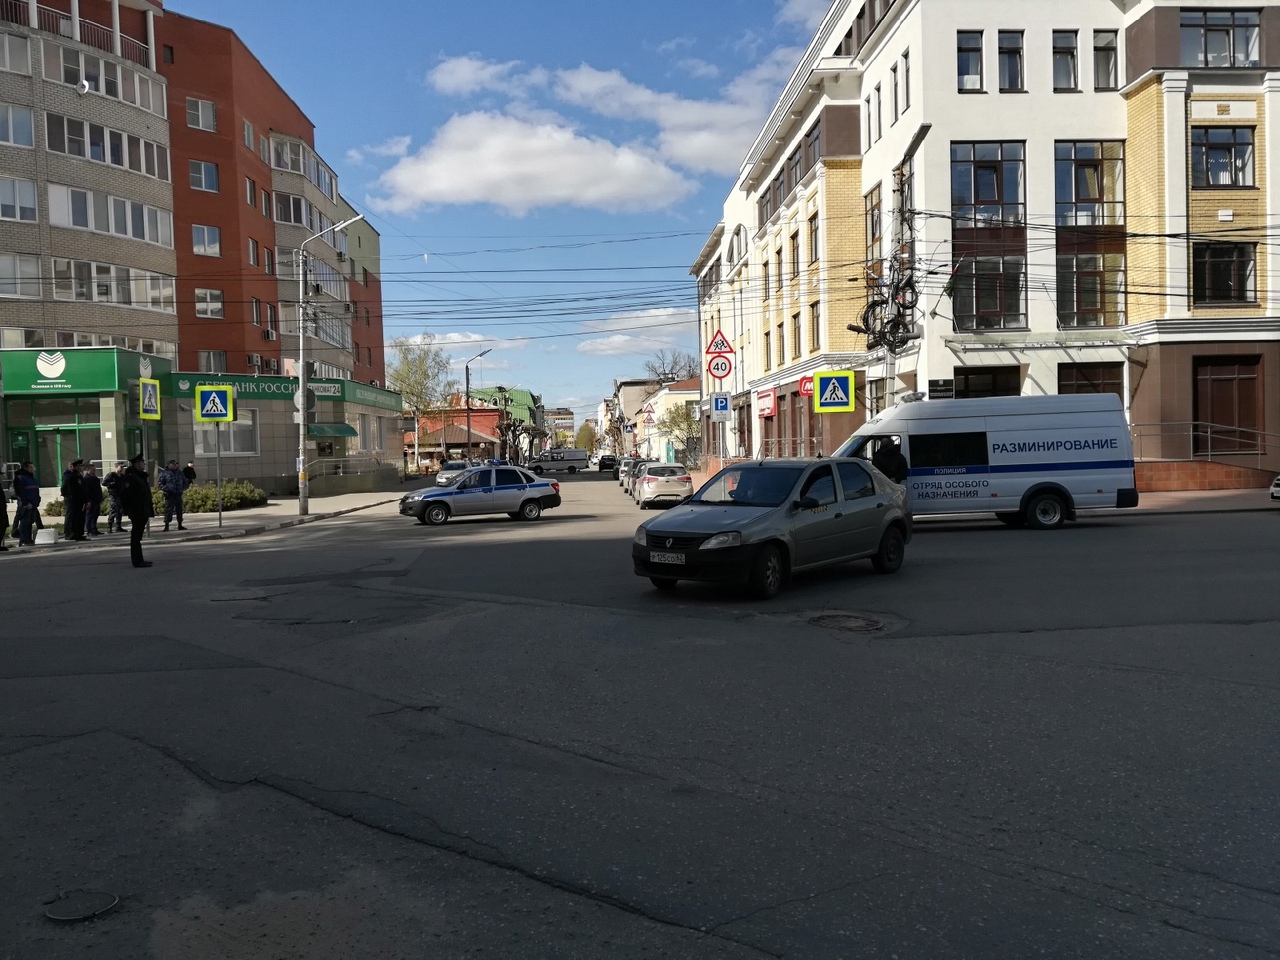 Полиция: опасных предметов на улице Кудрявцева не обнаружено